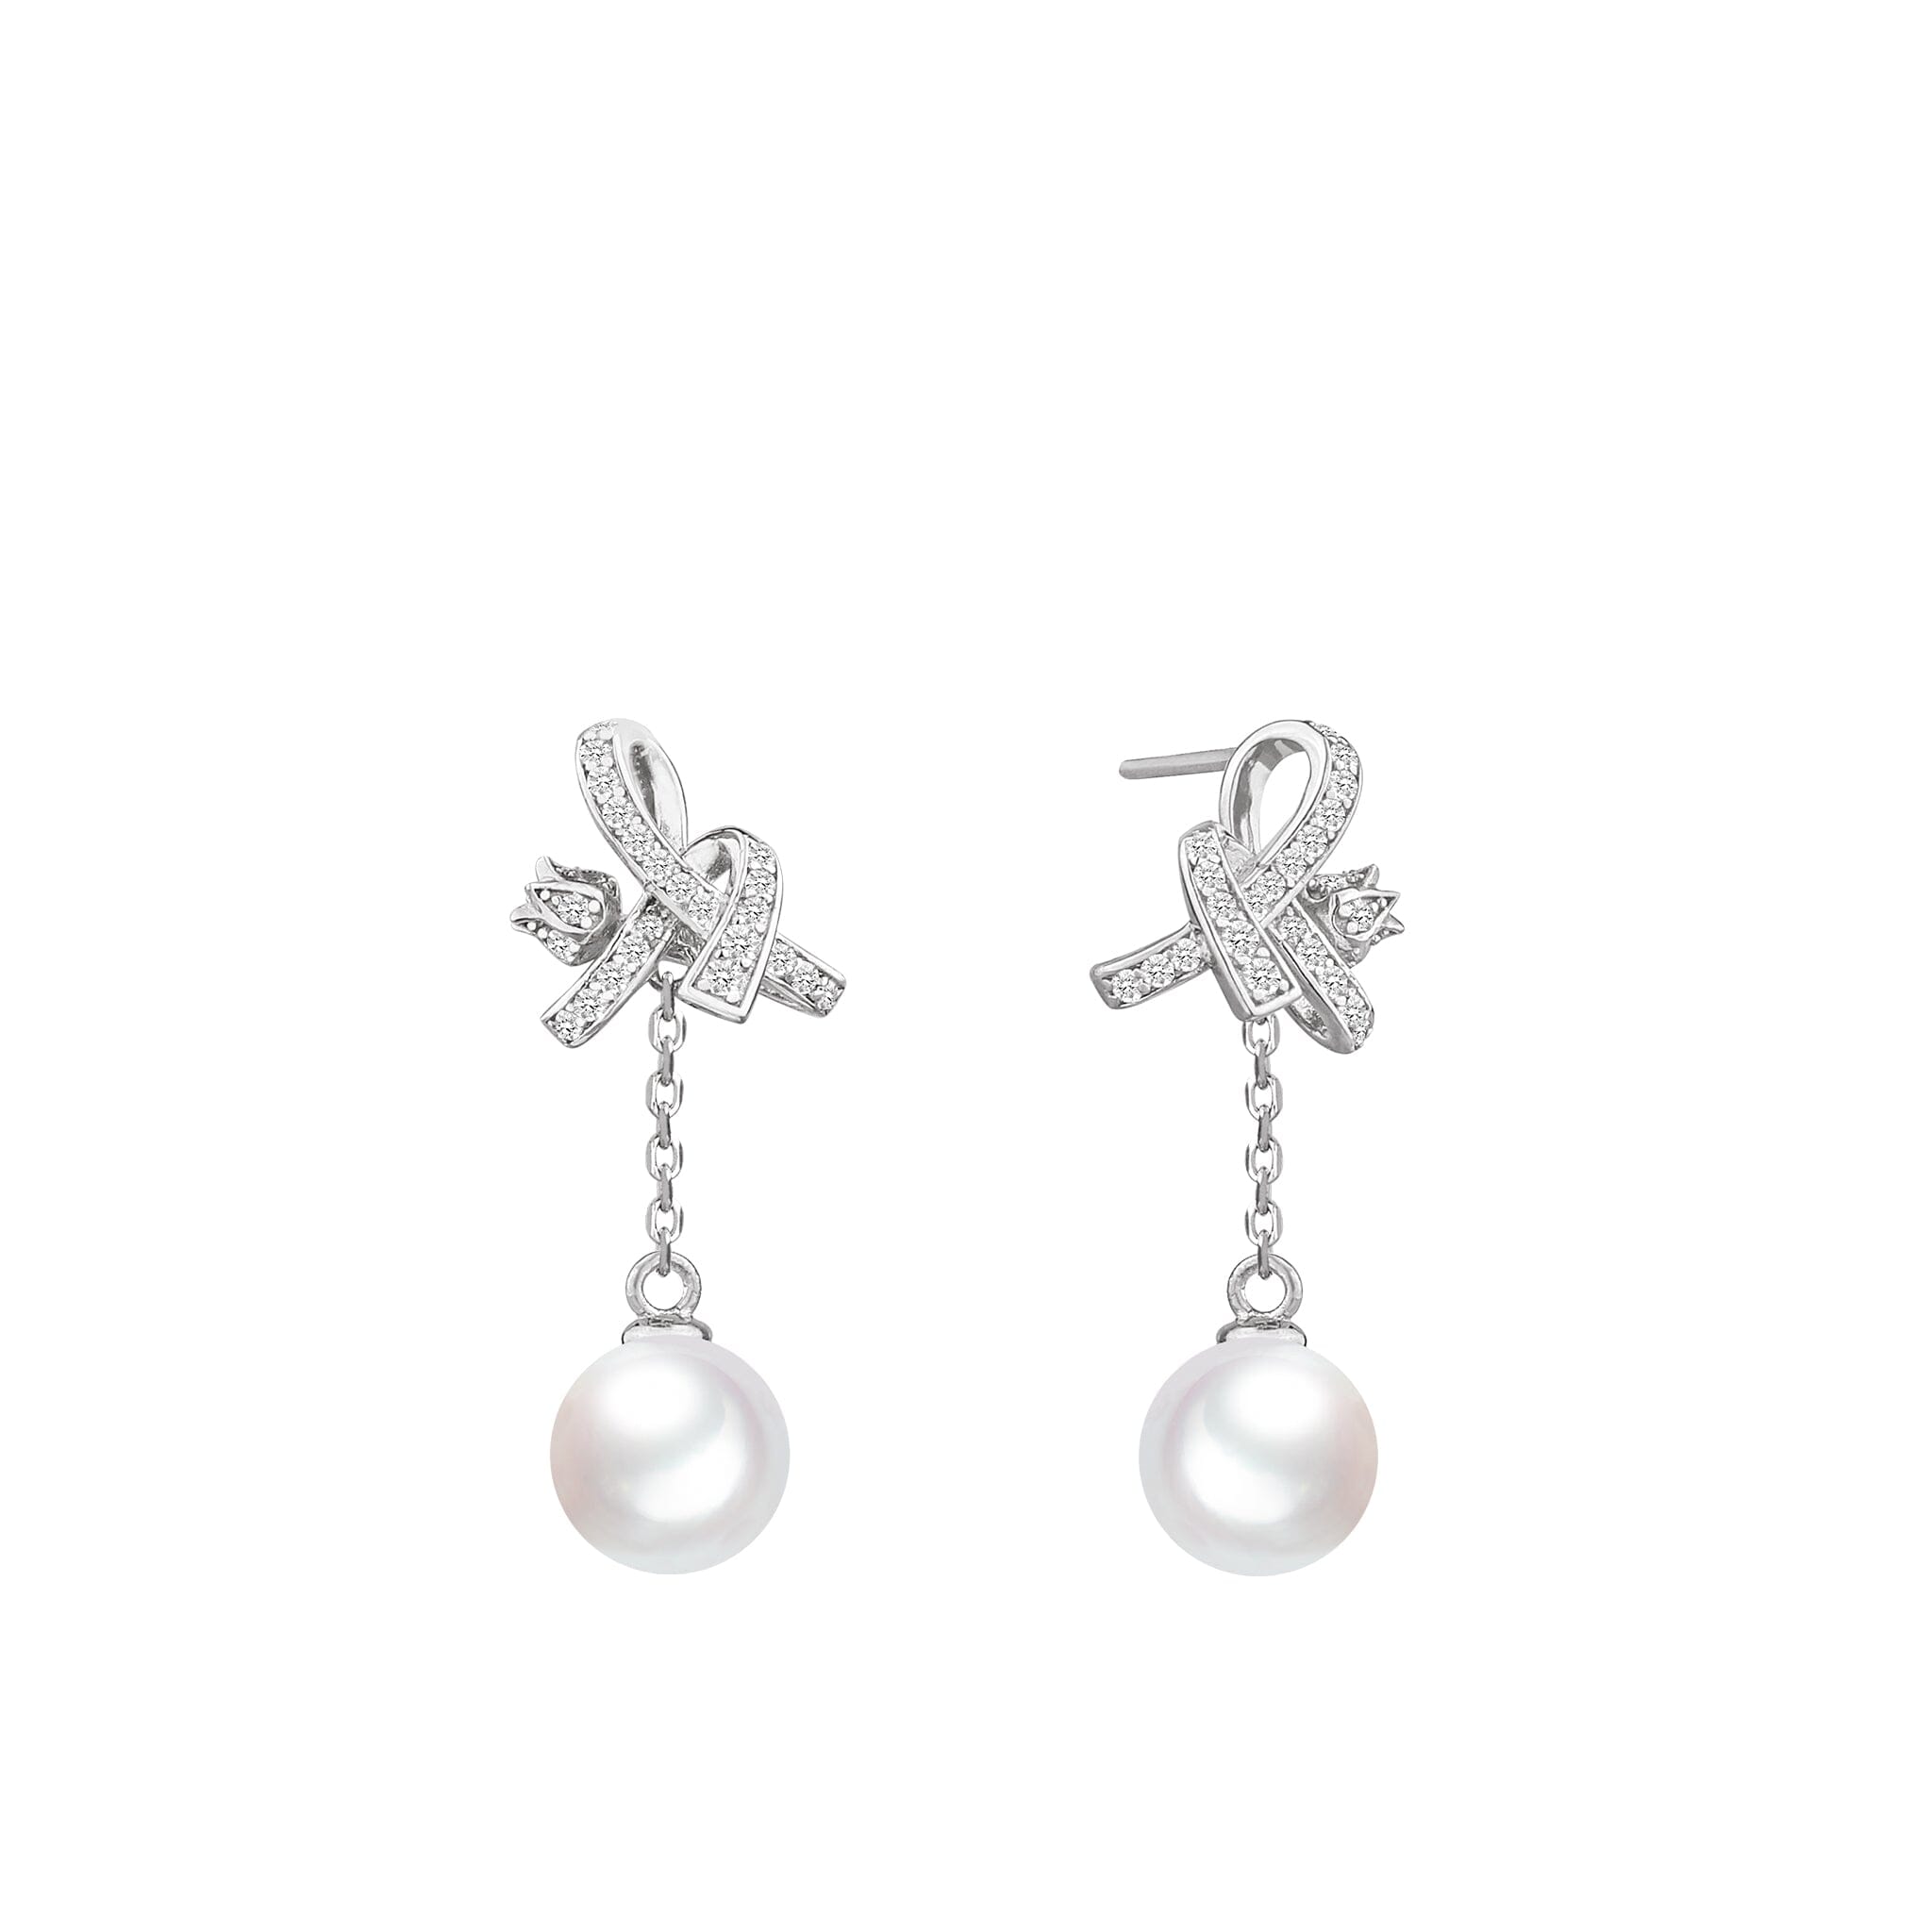 Women's Silver Drop Earrings with White Pearl Earrings AWNL 